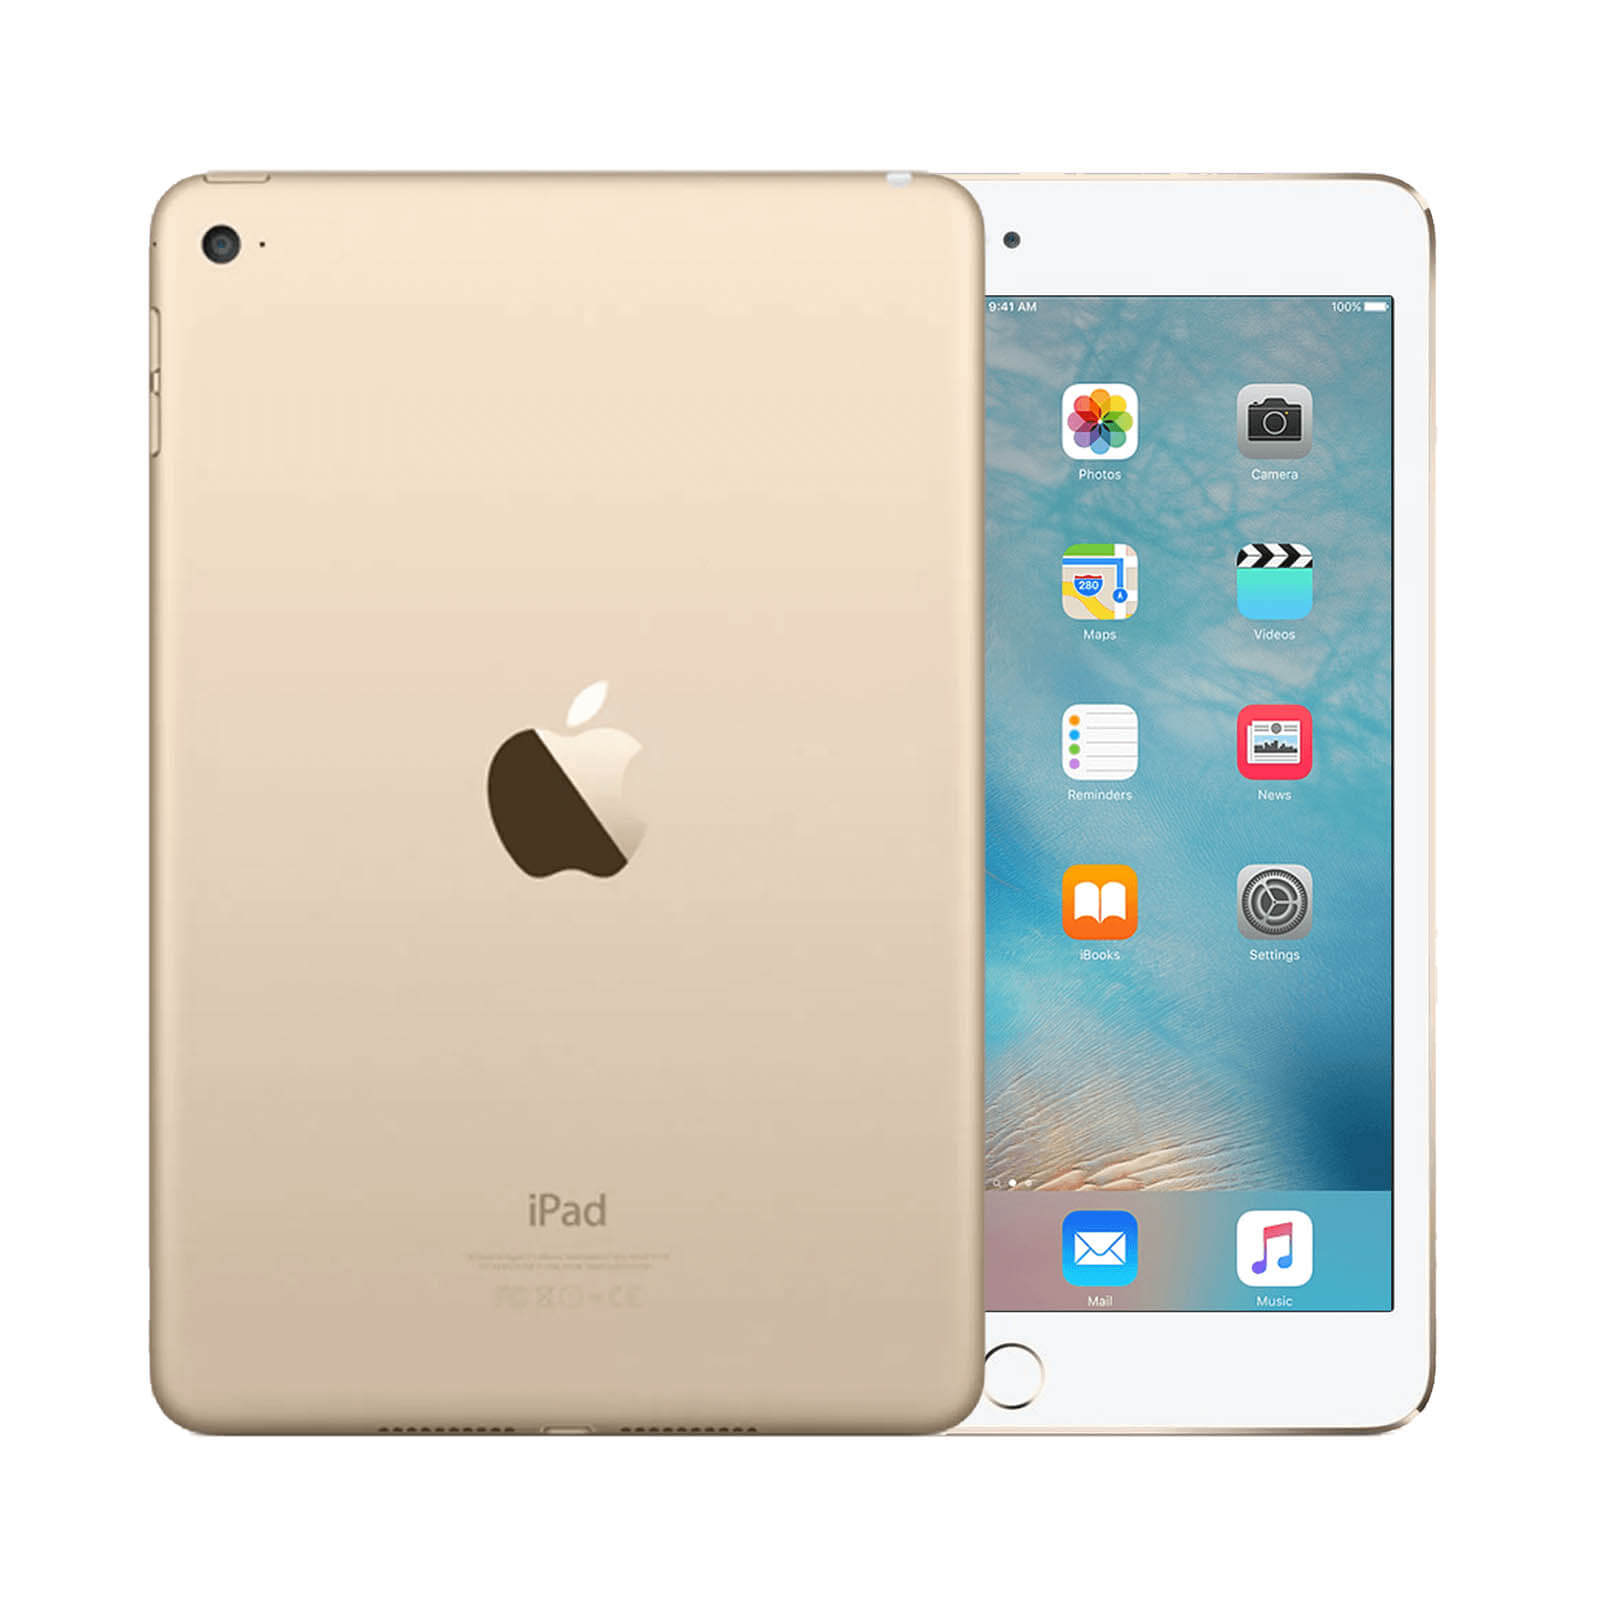 Apple iPad Mini 4 16GB Gold WiFi - Very Good 16GB Gold Very Good